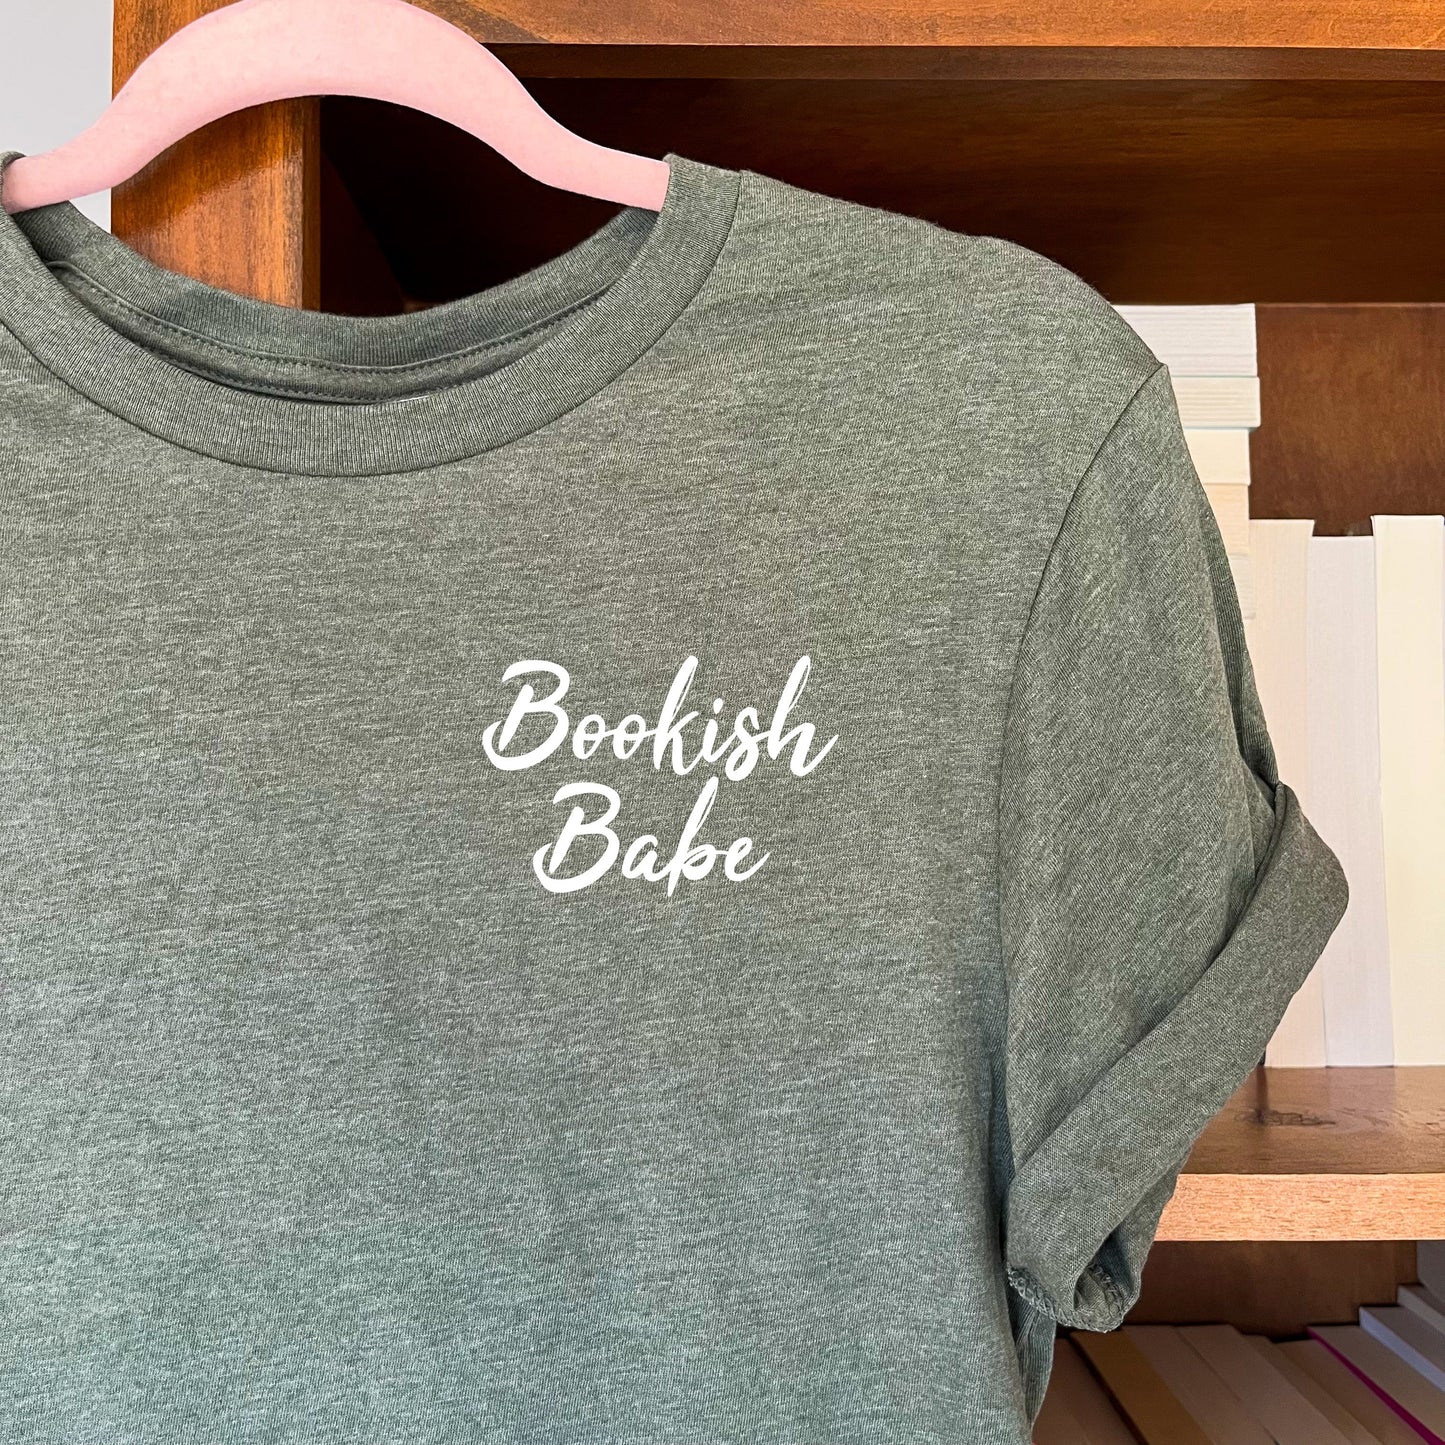 Bookish Babe Pocket T-shirt